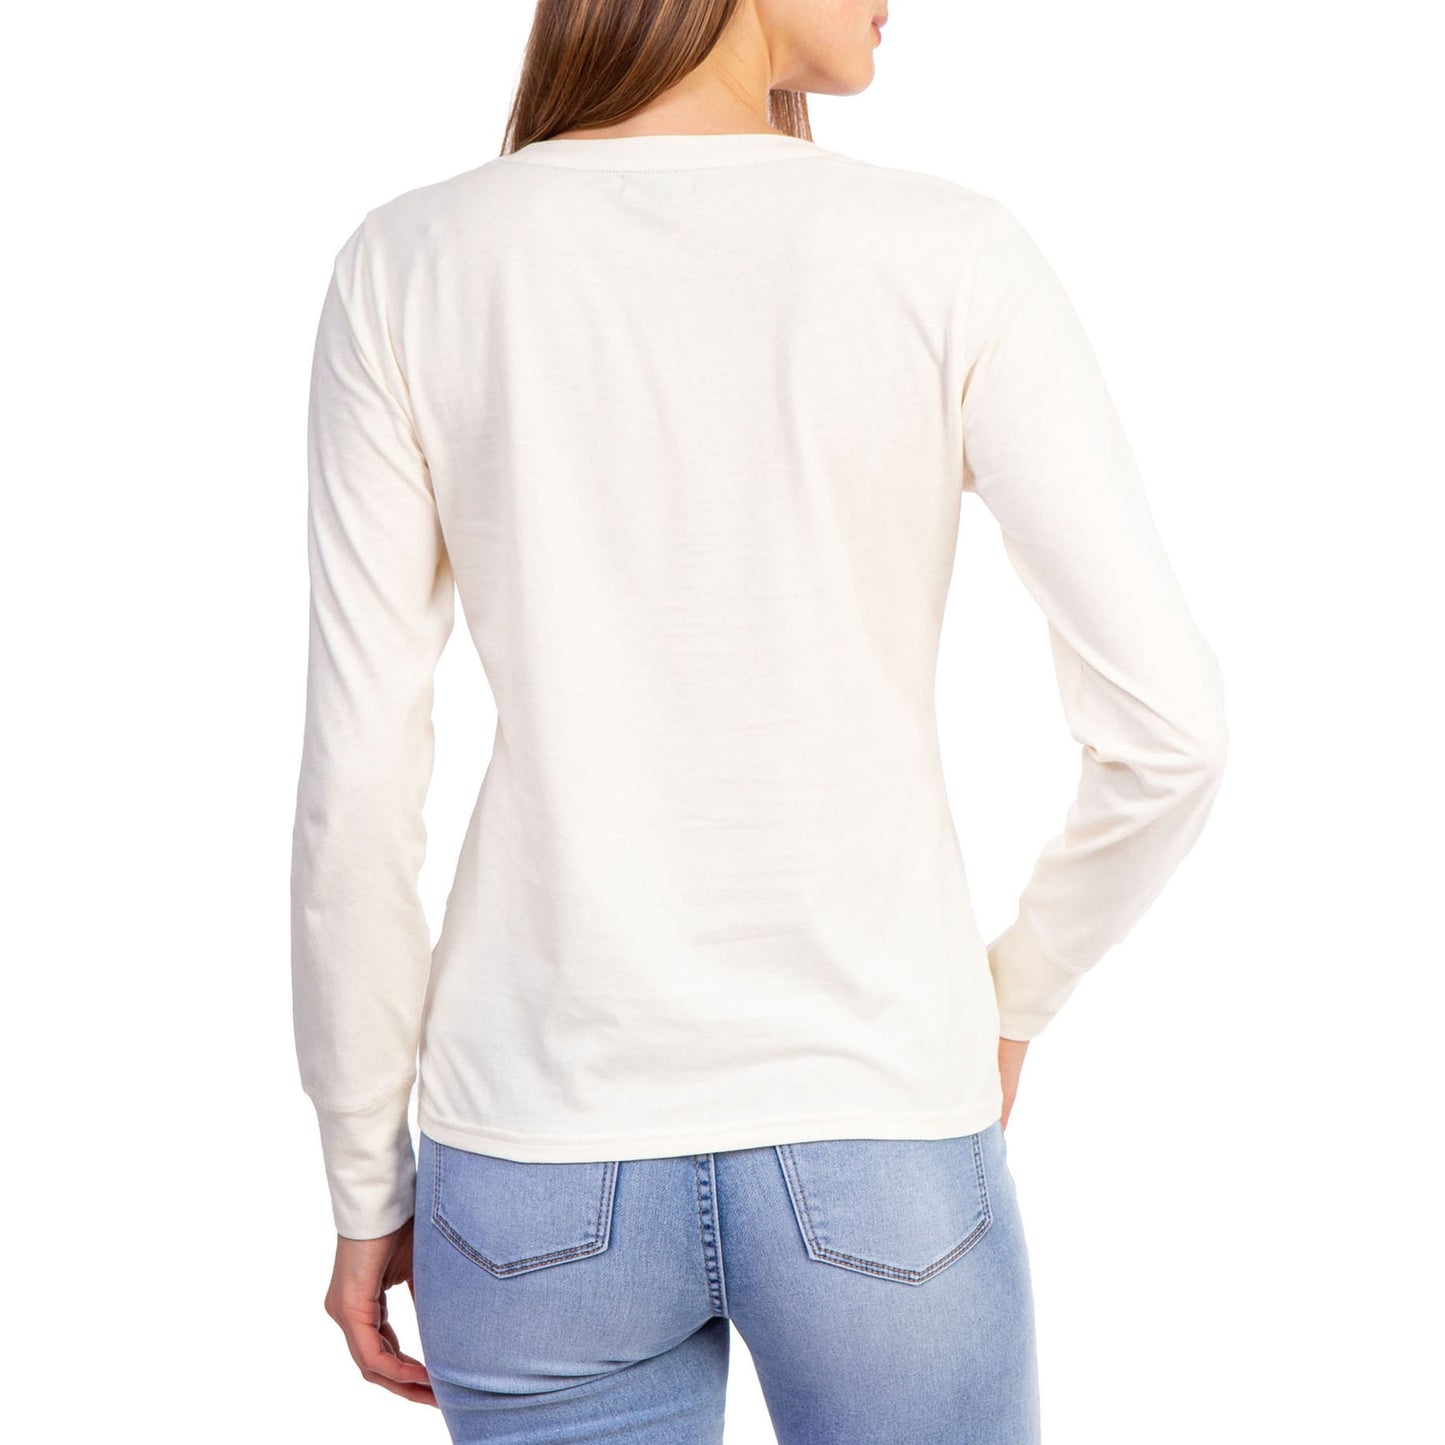 U.S. Polo Assn. Womens' Long Sleeve Graphic Jersey T Shirt